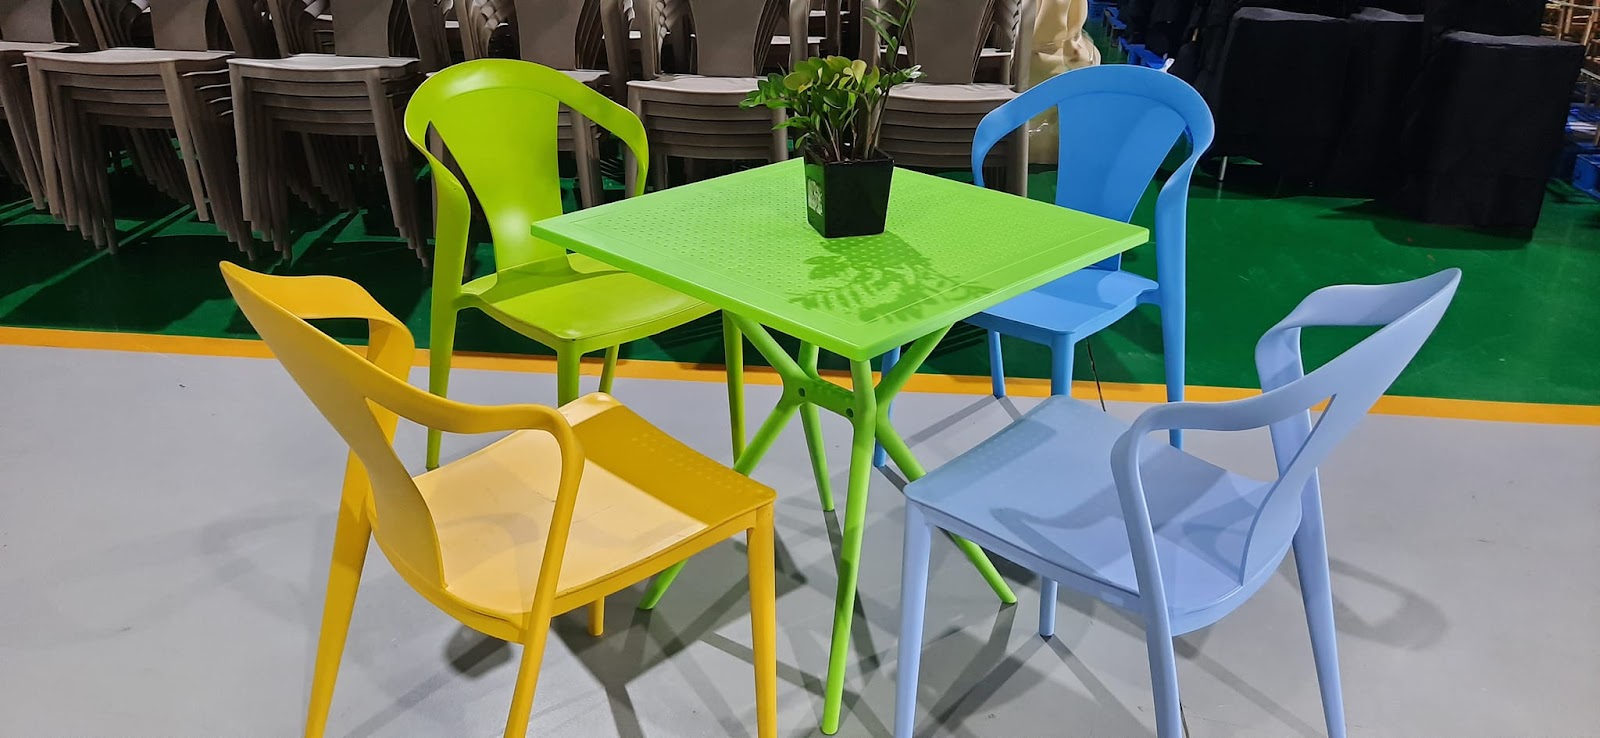 Bộ bàn ghế nhựa đúc với màu sắc trẻ trung năng động 